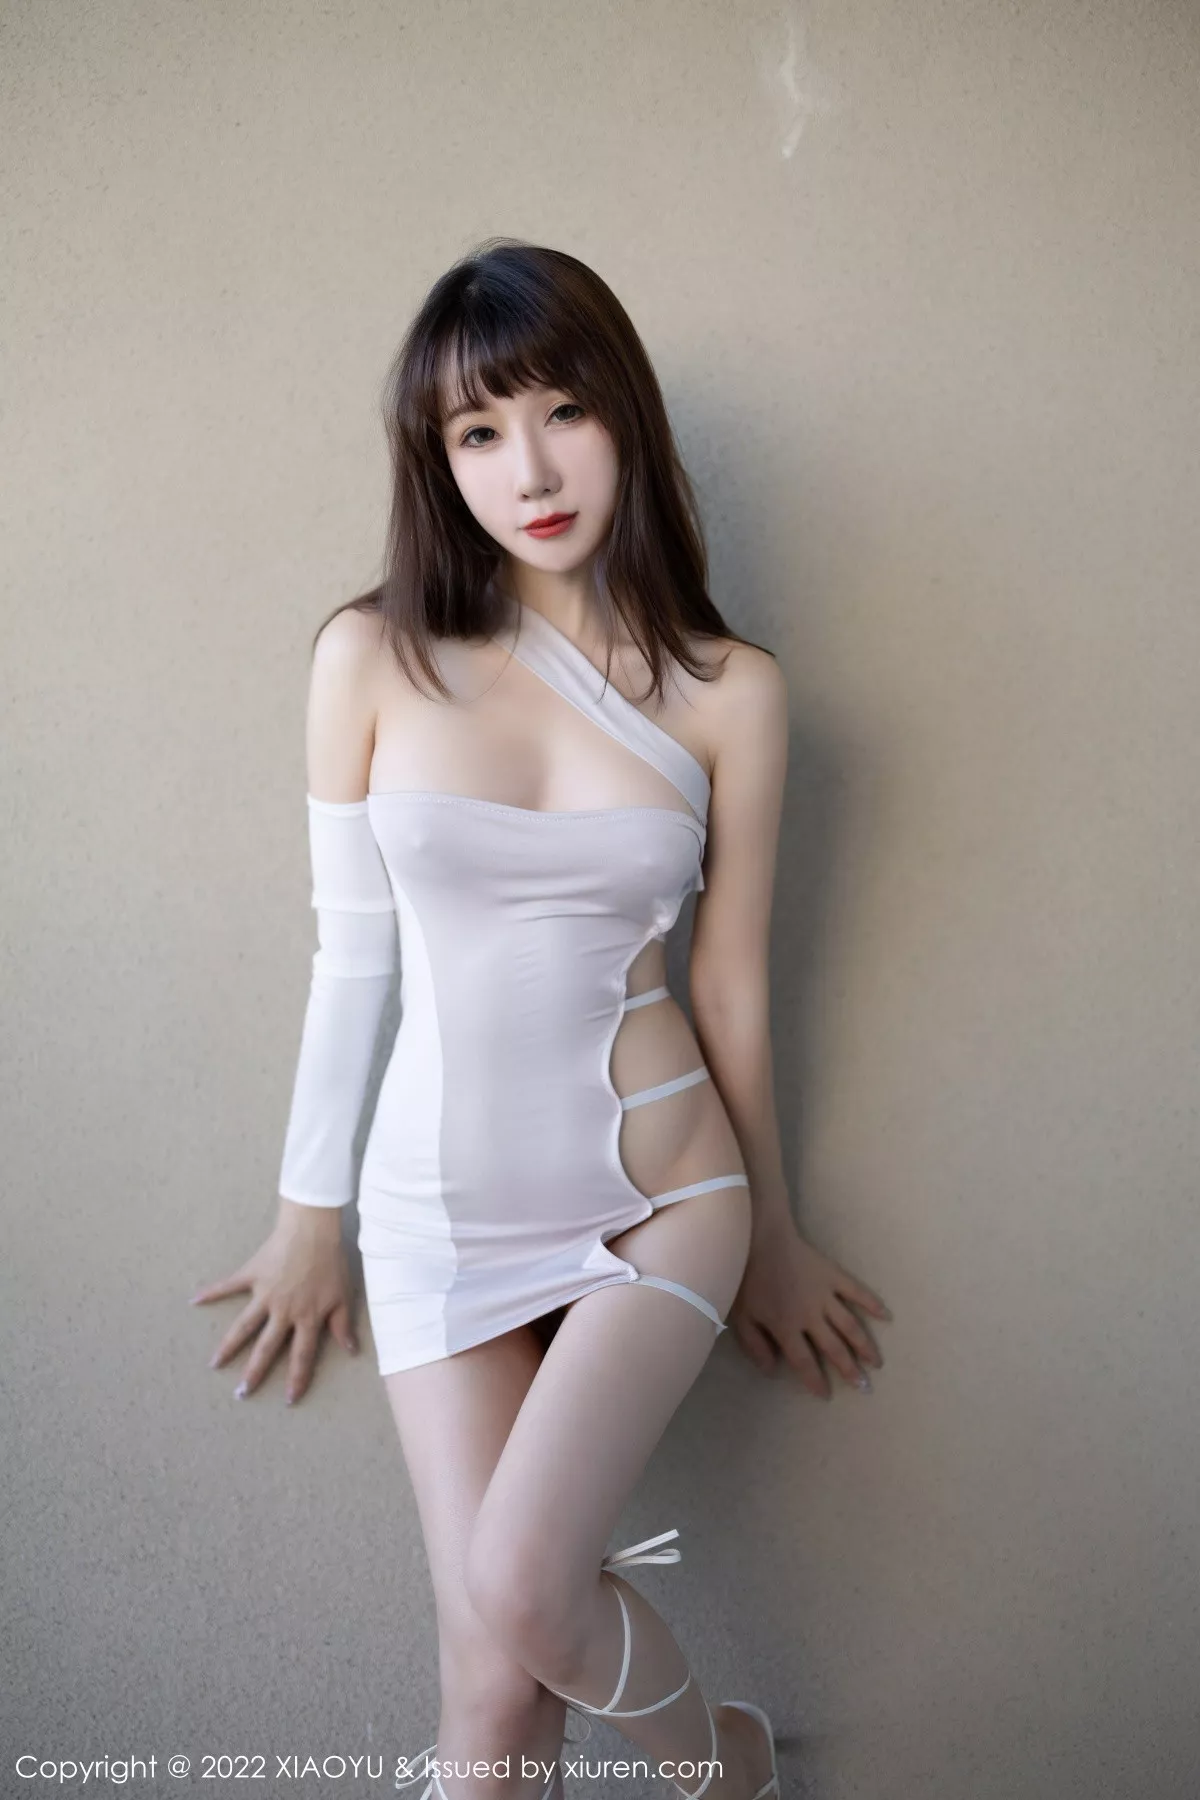 [XiaoYu画语界]Vol.900_模特波巧酱浅紫色露肩连衣短裙配白色高跟秀曼妙身姿迷人写真81P